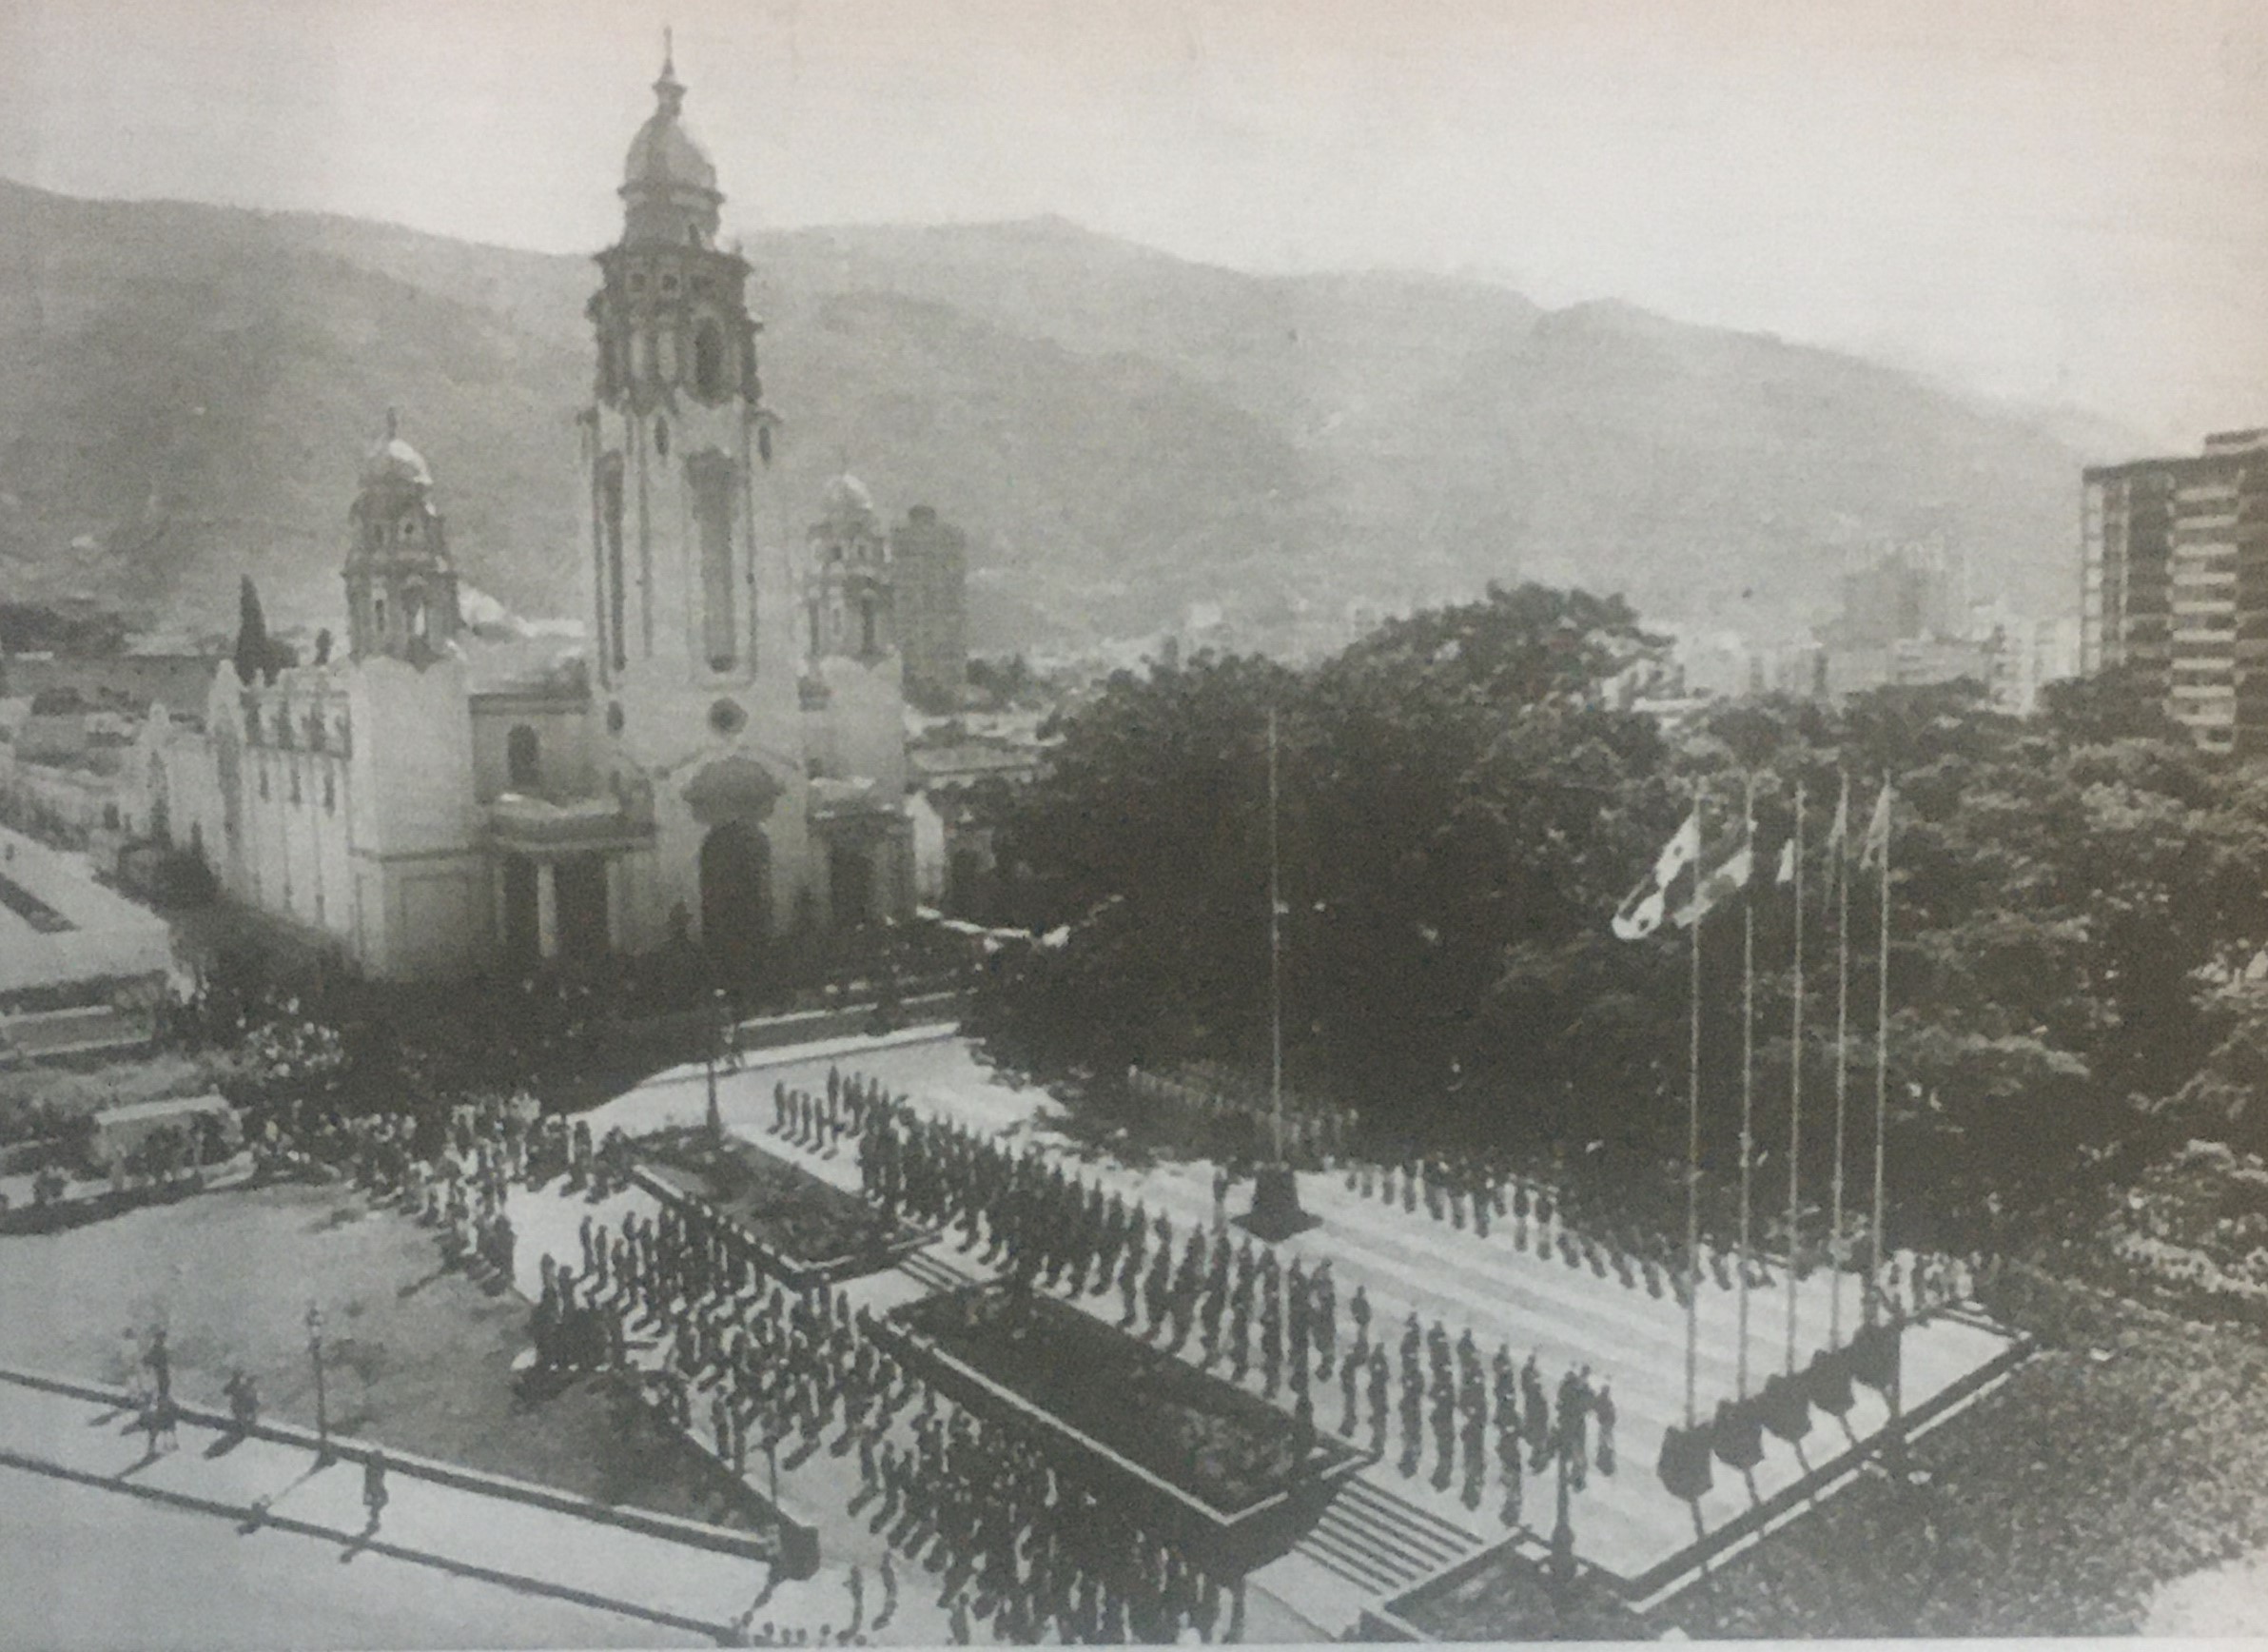 Acto celebrados en el Panteón Nacional, en Caracas, con motivo de haberse cumplido 150 años del Congreso anfictiónico (1826-1976).